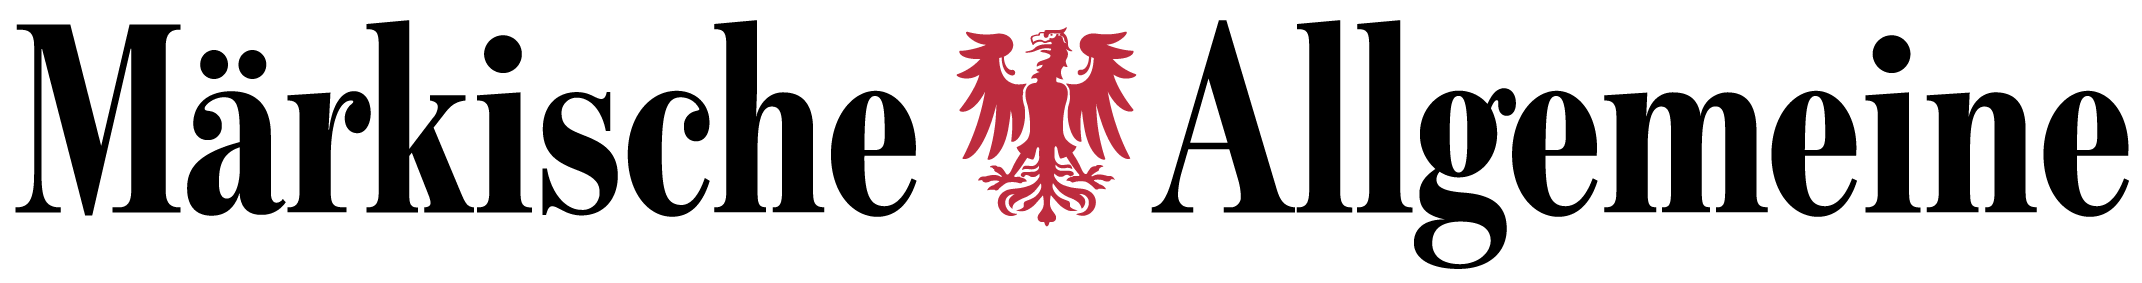 Märkische Allgemeine logo 201